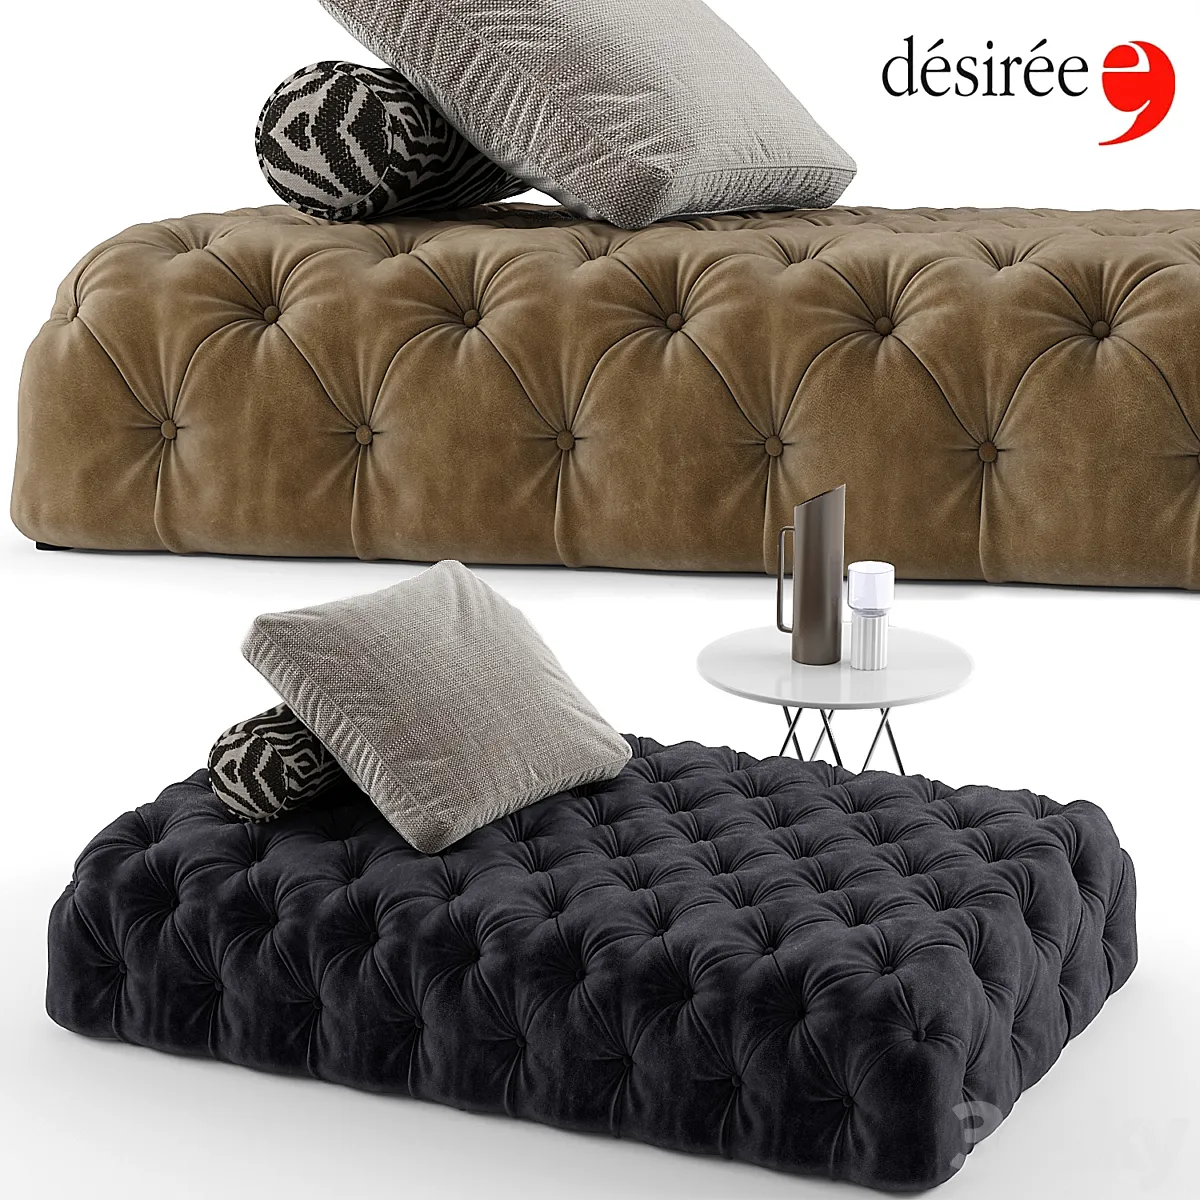 3dsky - Desiree rollking sofa set - Other soft seating - 3D model